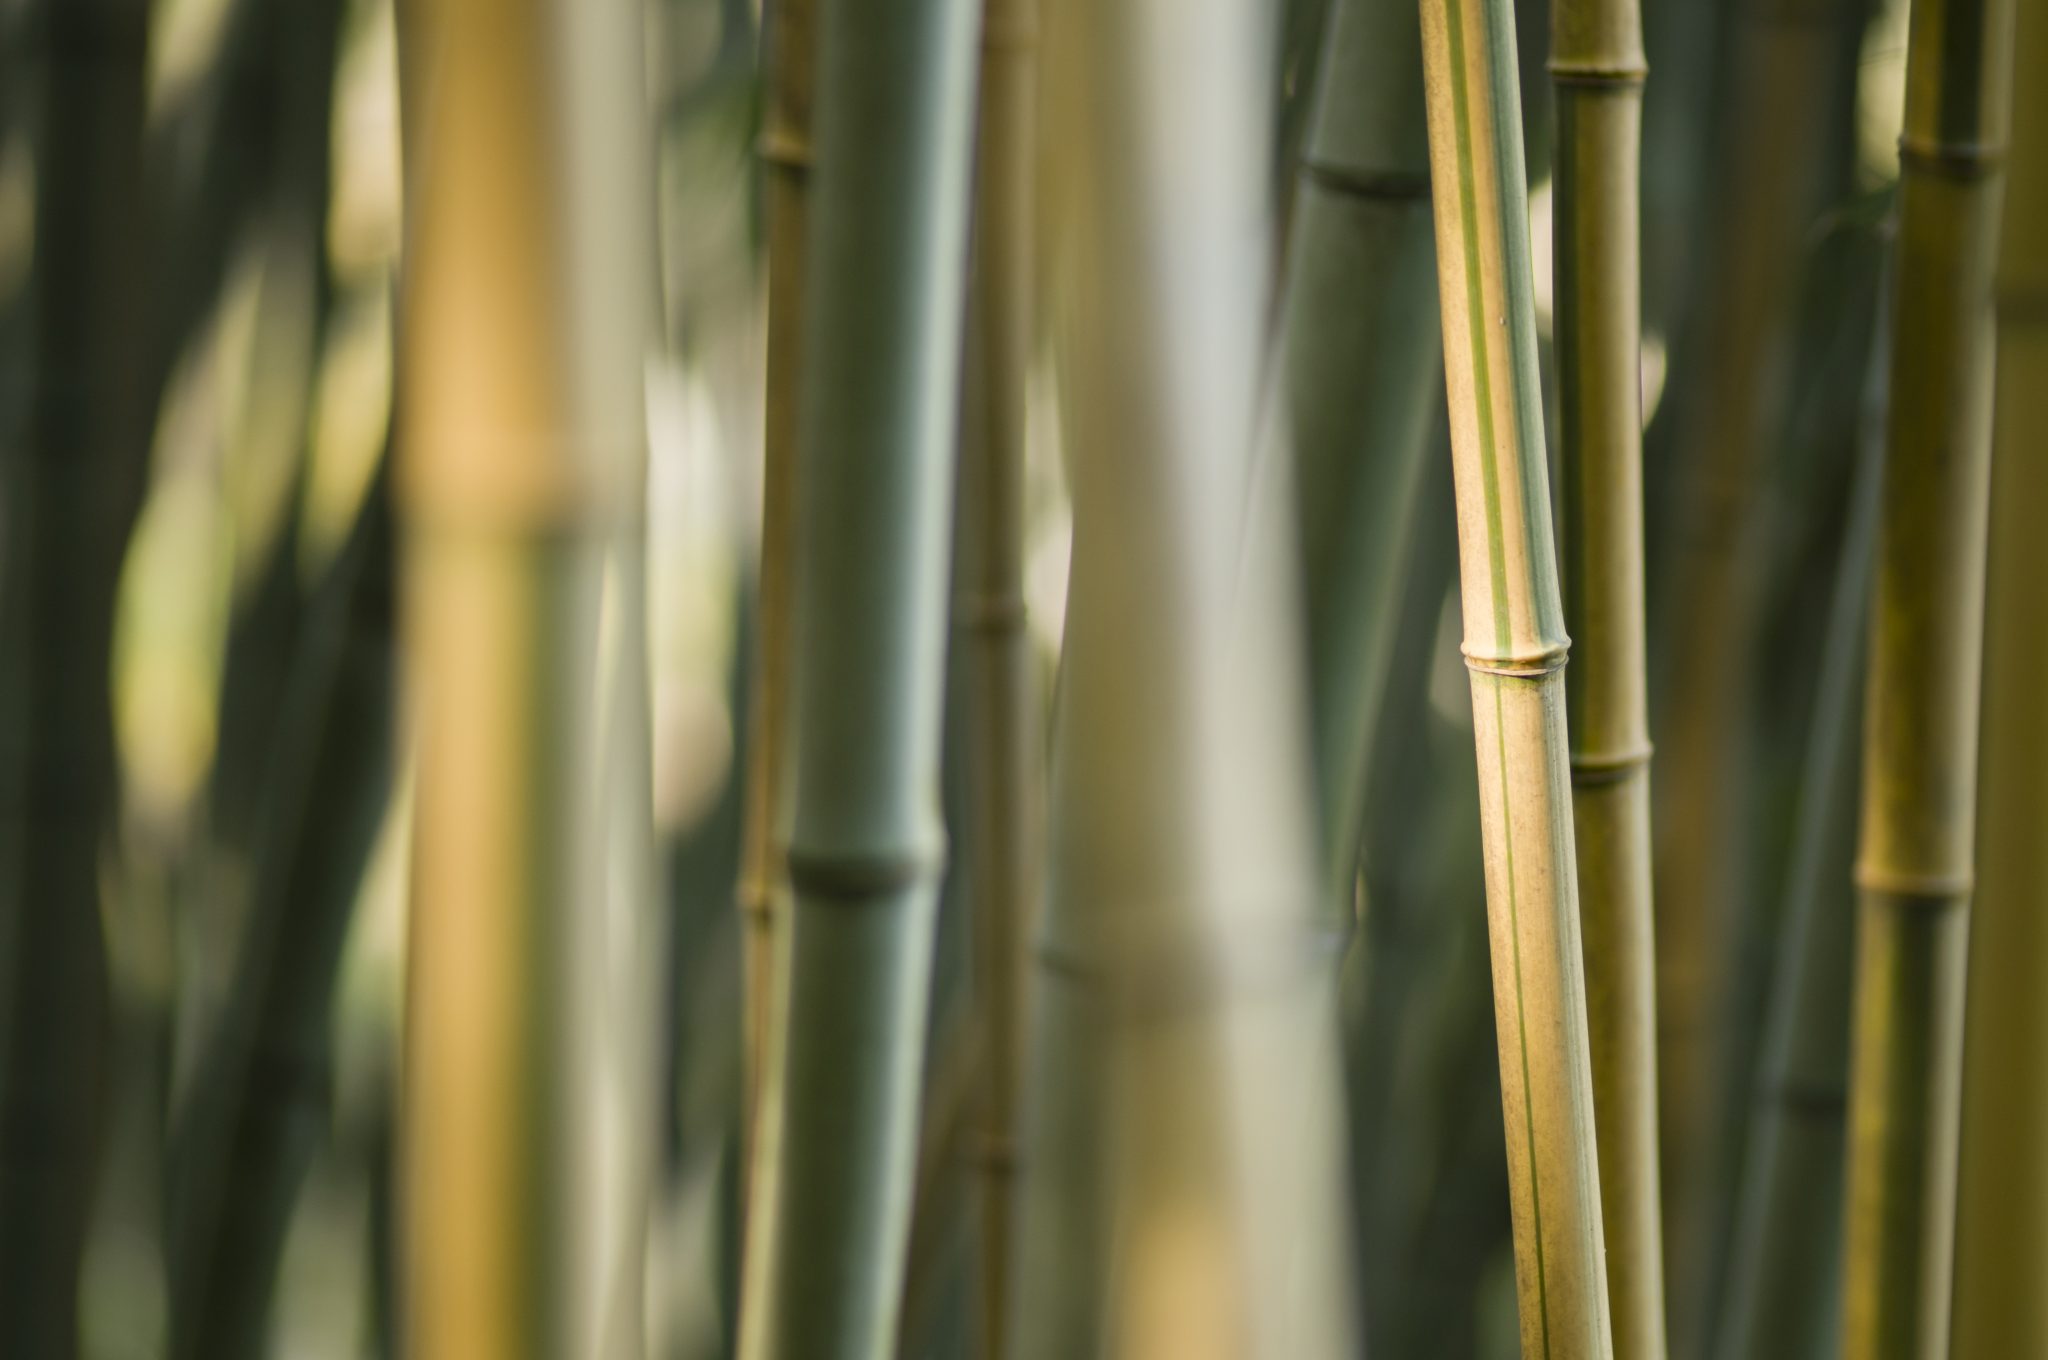 bamboo in vendita da Giacomelli Piante (Piante Perenni e graminacee)